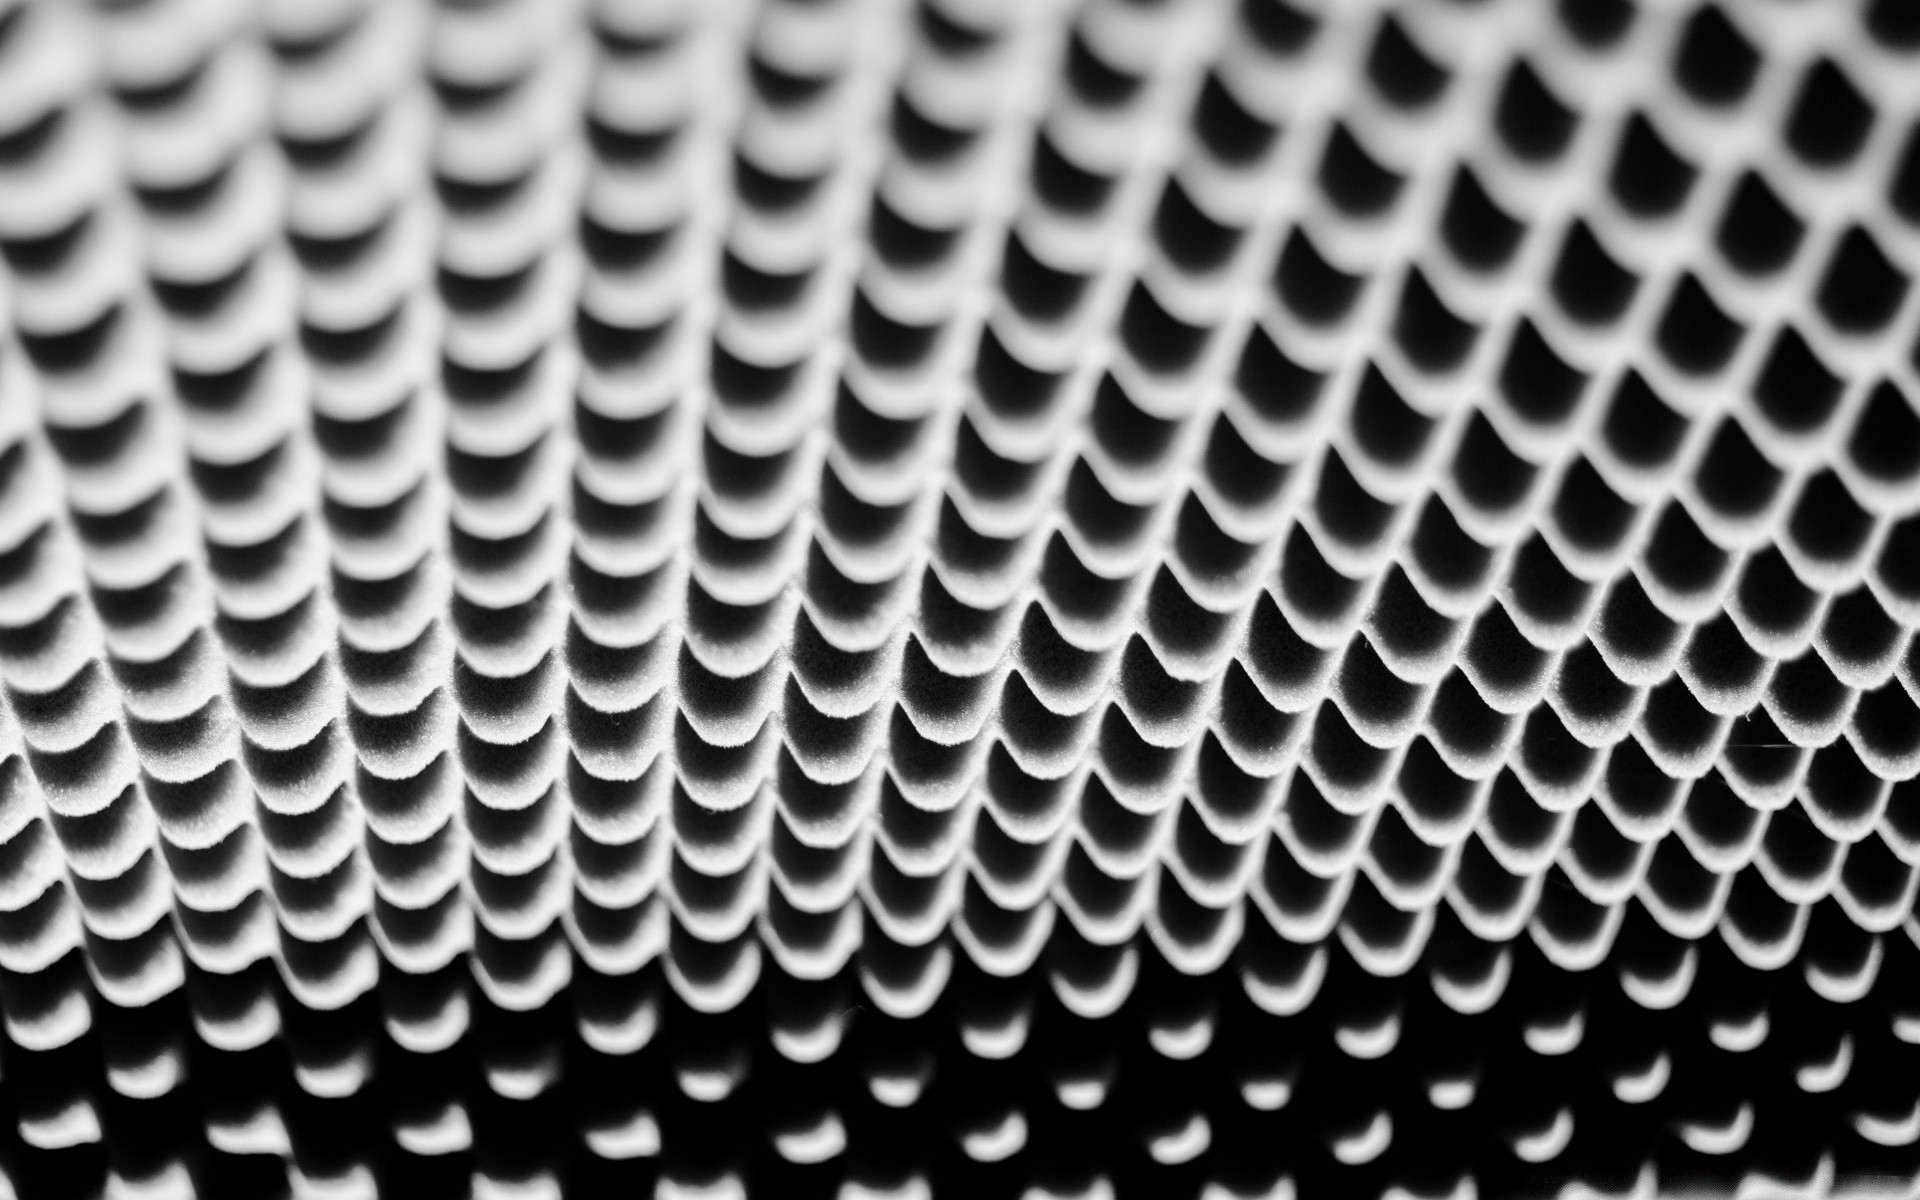 черно-белое хром сталь алюминий чистая рабочего стола нержавеющая сталь металлические сплав утюг текстура шаблон дизайн аннотация промышленность сота ткань остекленные технология